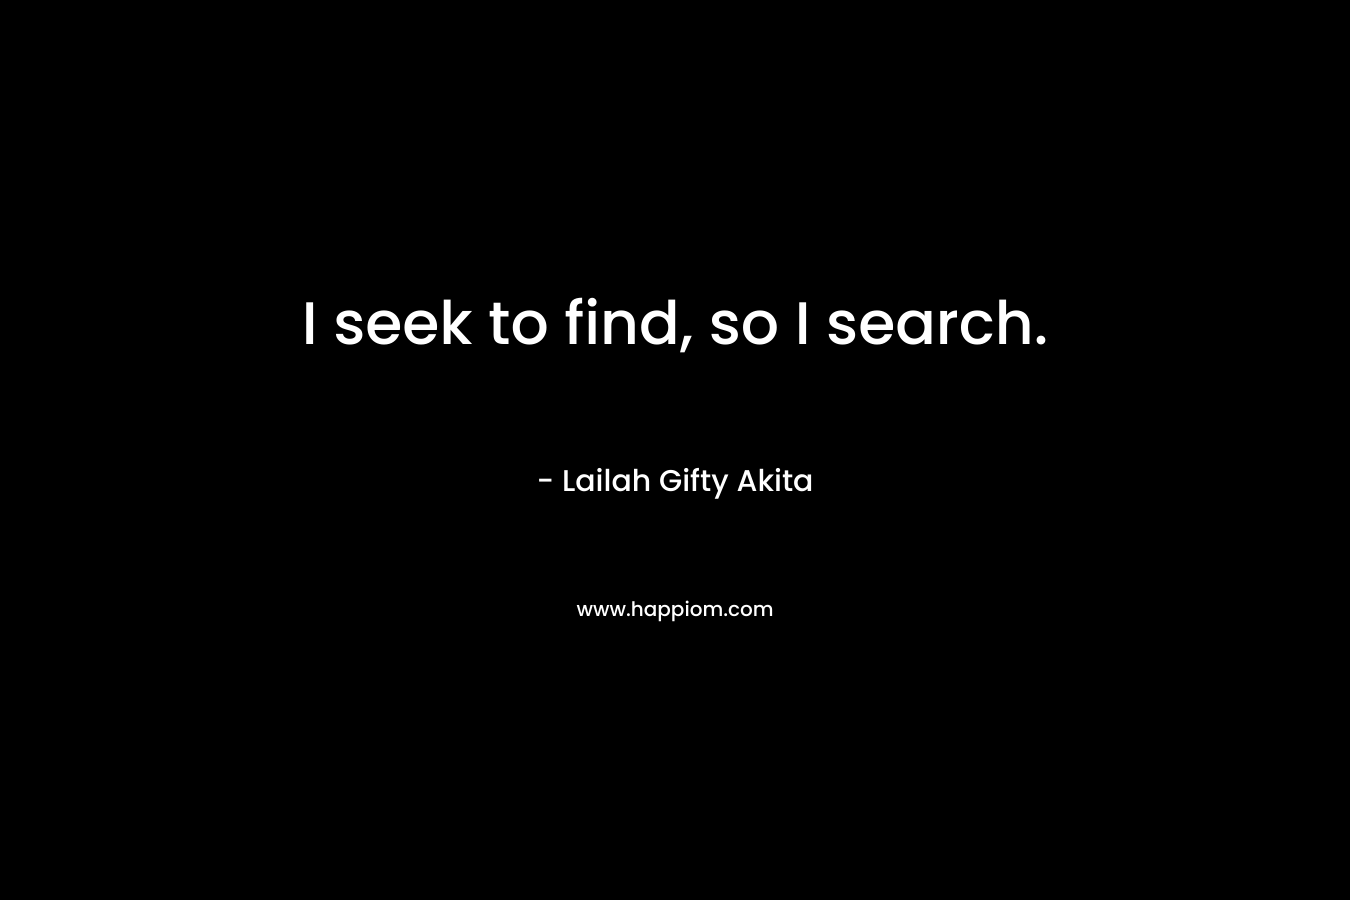 I seek to find, so I search.